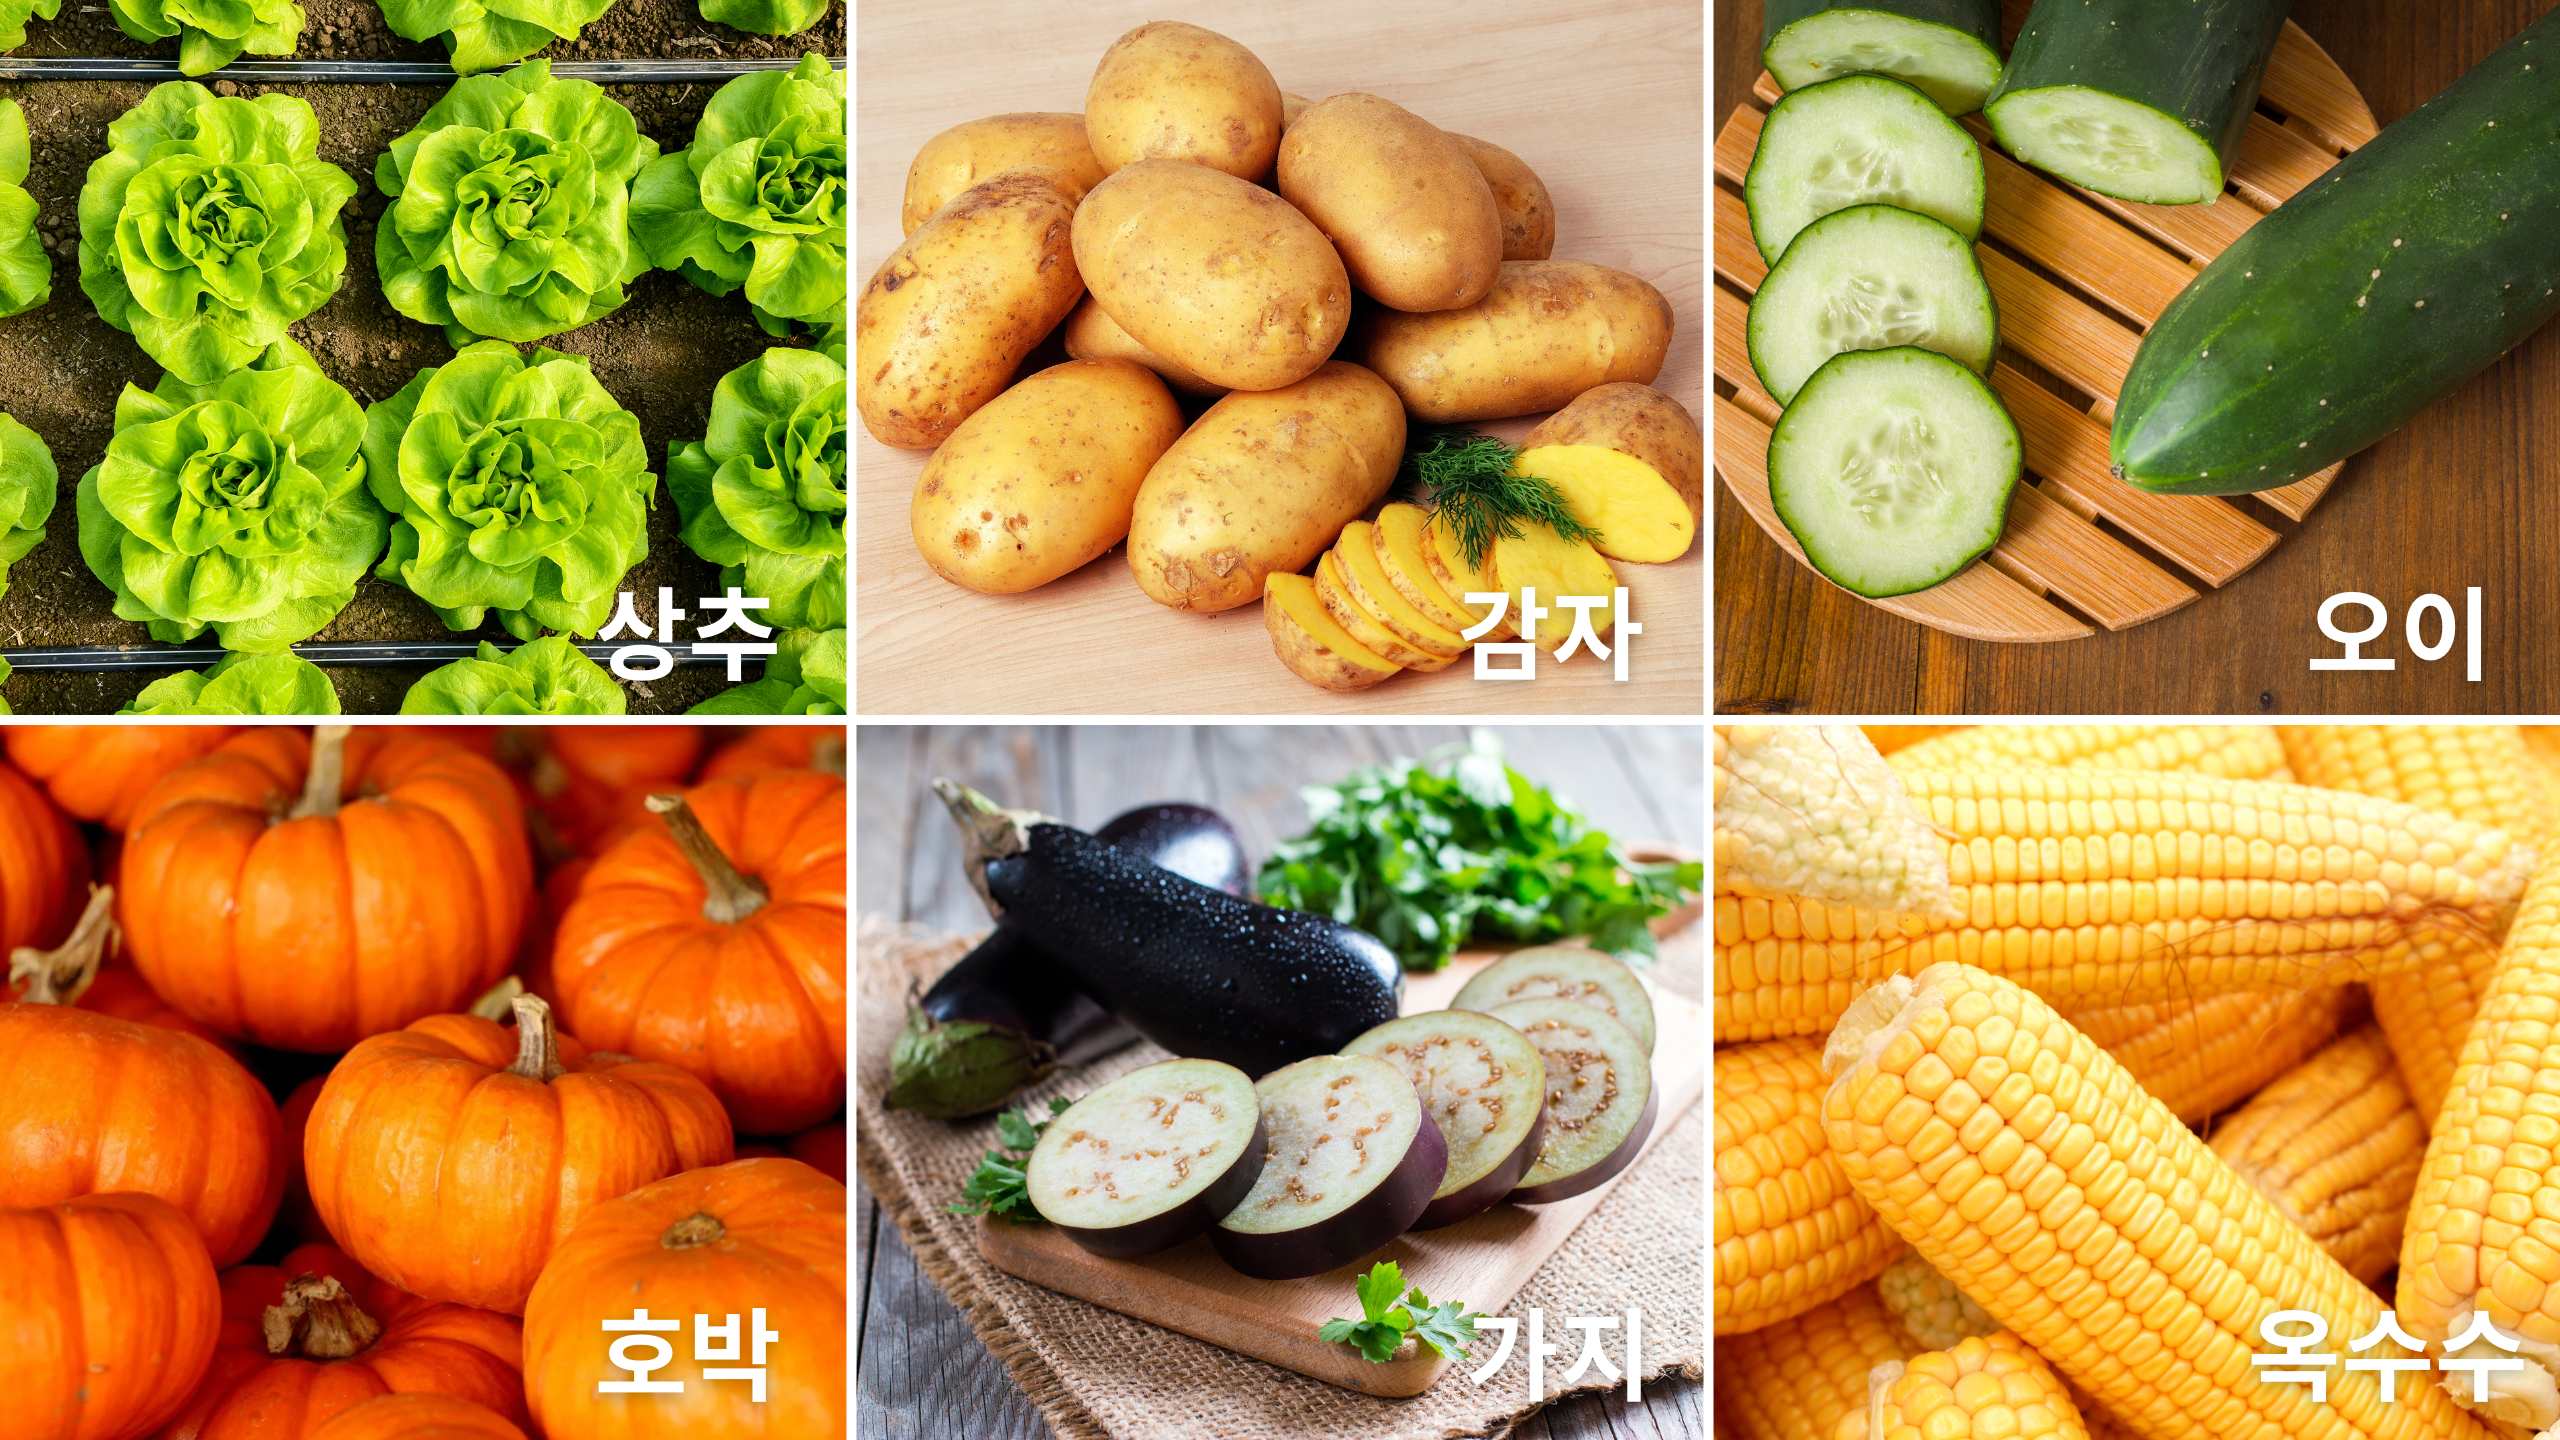 frutas e legumes em coreano